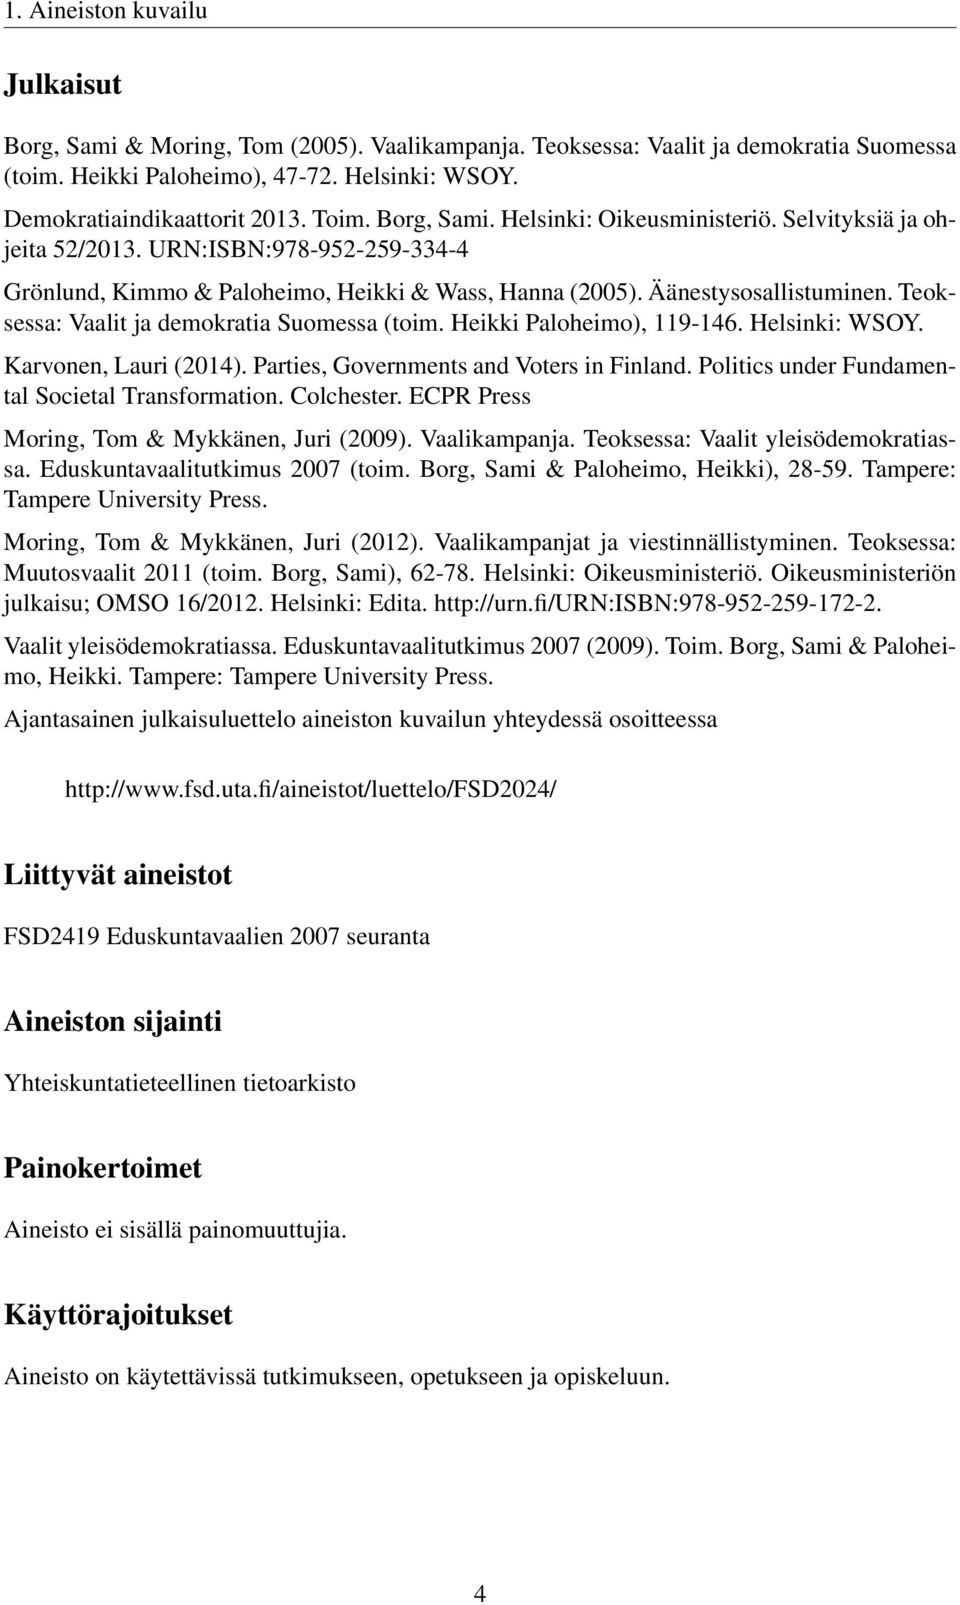 Teoksessa: Vaalit ja demokratia Suomessa (toim. Heikki Paloheimo), 119-146. Helsinki: WSOY. Karvonen, Lauri (2014). Parties, Governments and Voters in Finland.